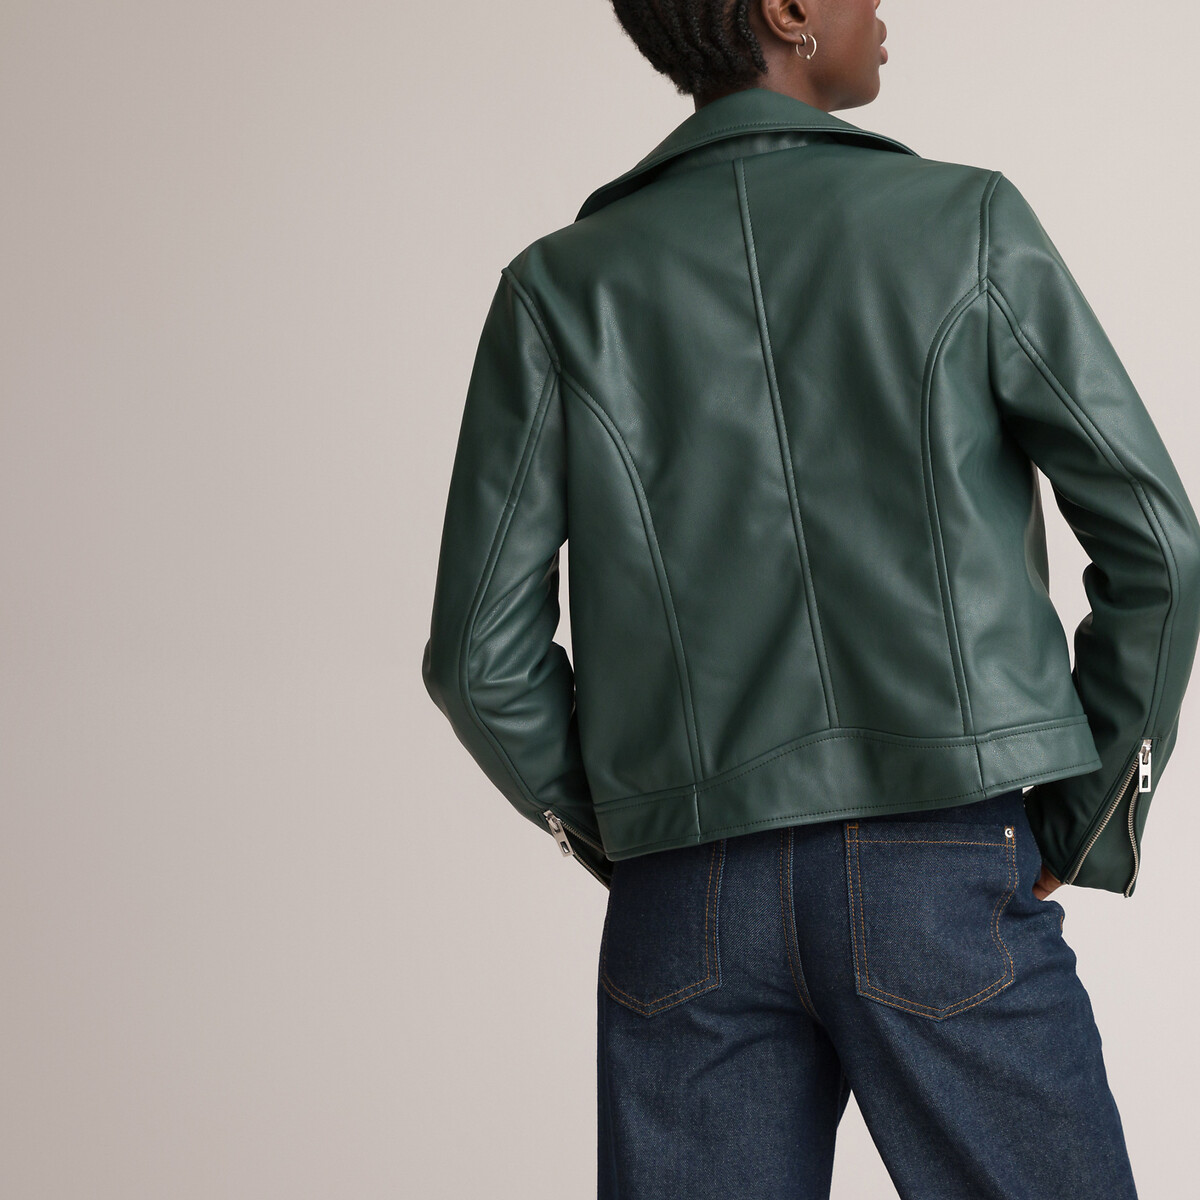 Куртка LA REDOUTE COLLECTIONS Куртка Короткая из искусственной кожи 34 (FR) - 40 (RUS) зеленый, размер 34 (FR) - 40 (RUS) Куртка Короткая из искусственной кожи 34 (FR) - 40 (RUS) зеленый - фото 4